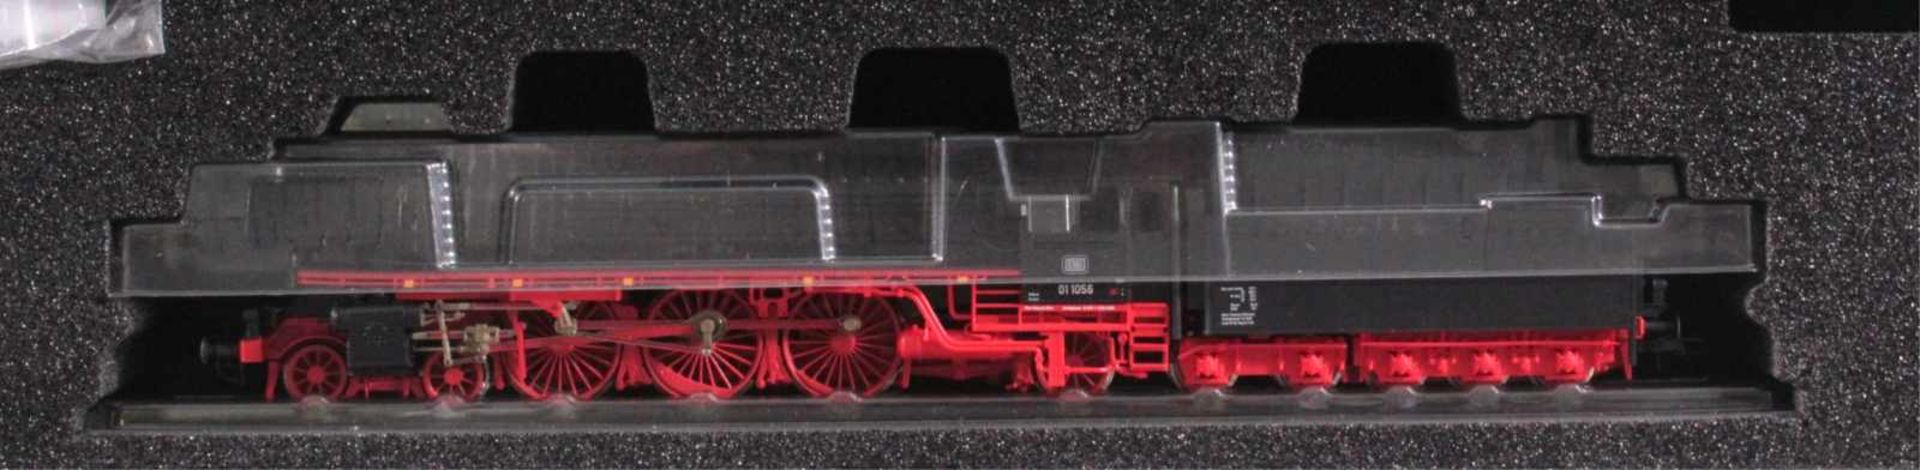 Roco Dampflokomotive 63222 DB 01 1056, Spur H0Neuwertig und in Originalverpackung. - Bild 2 aus 3